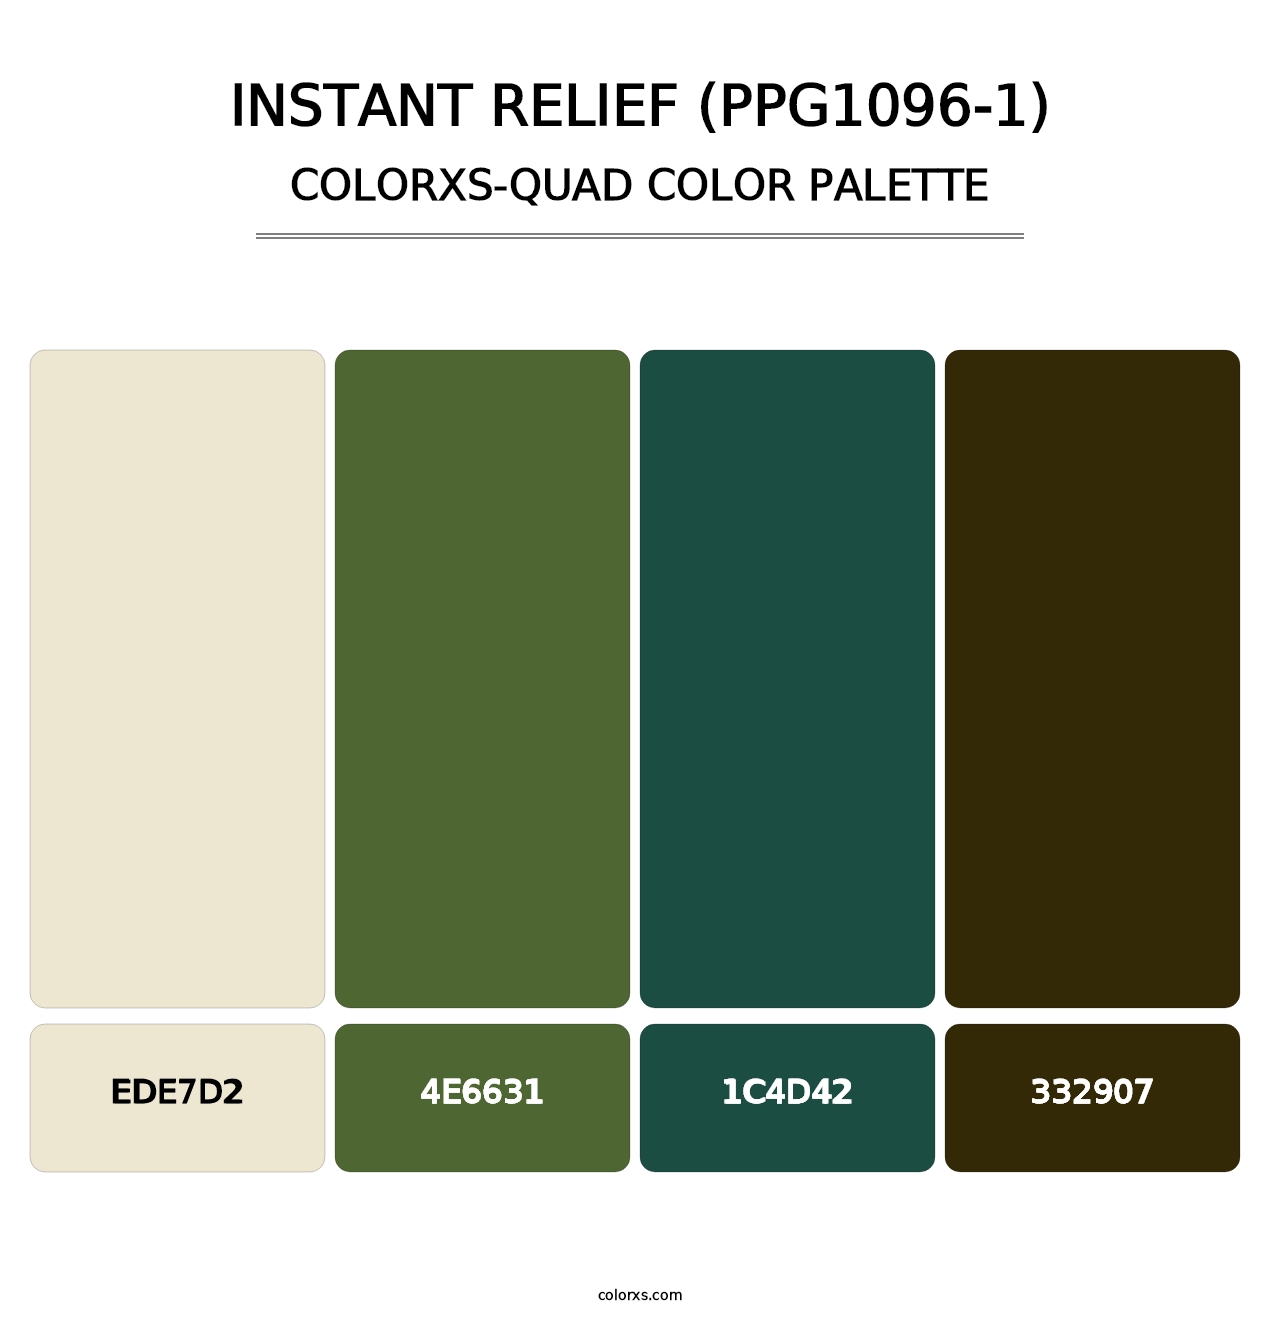 Instant Relief (PPG1096-1) - Colorxs Quad Palette